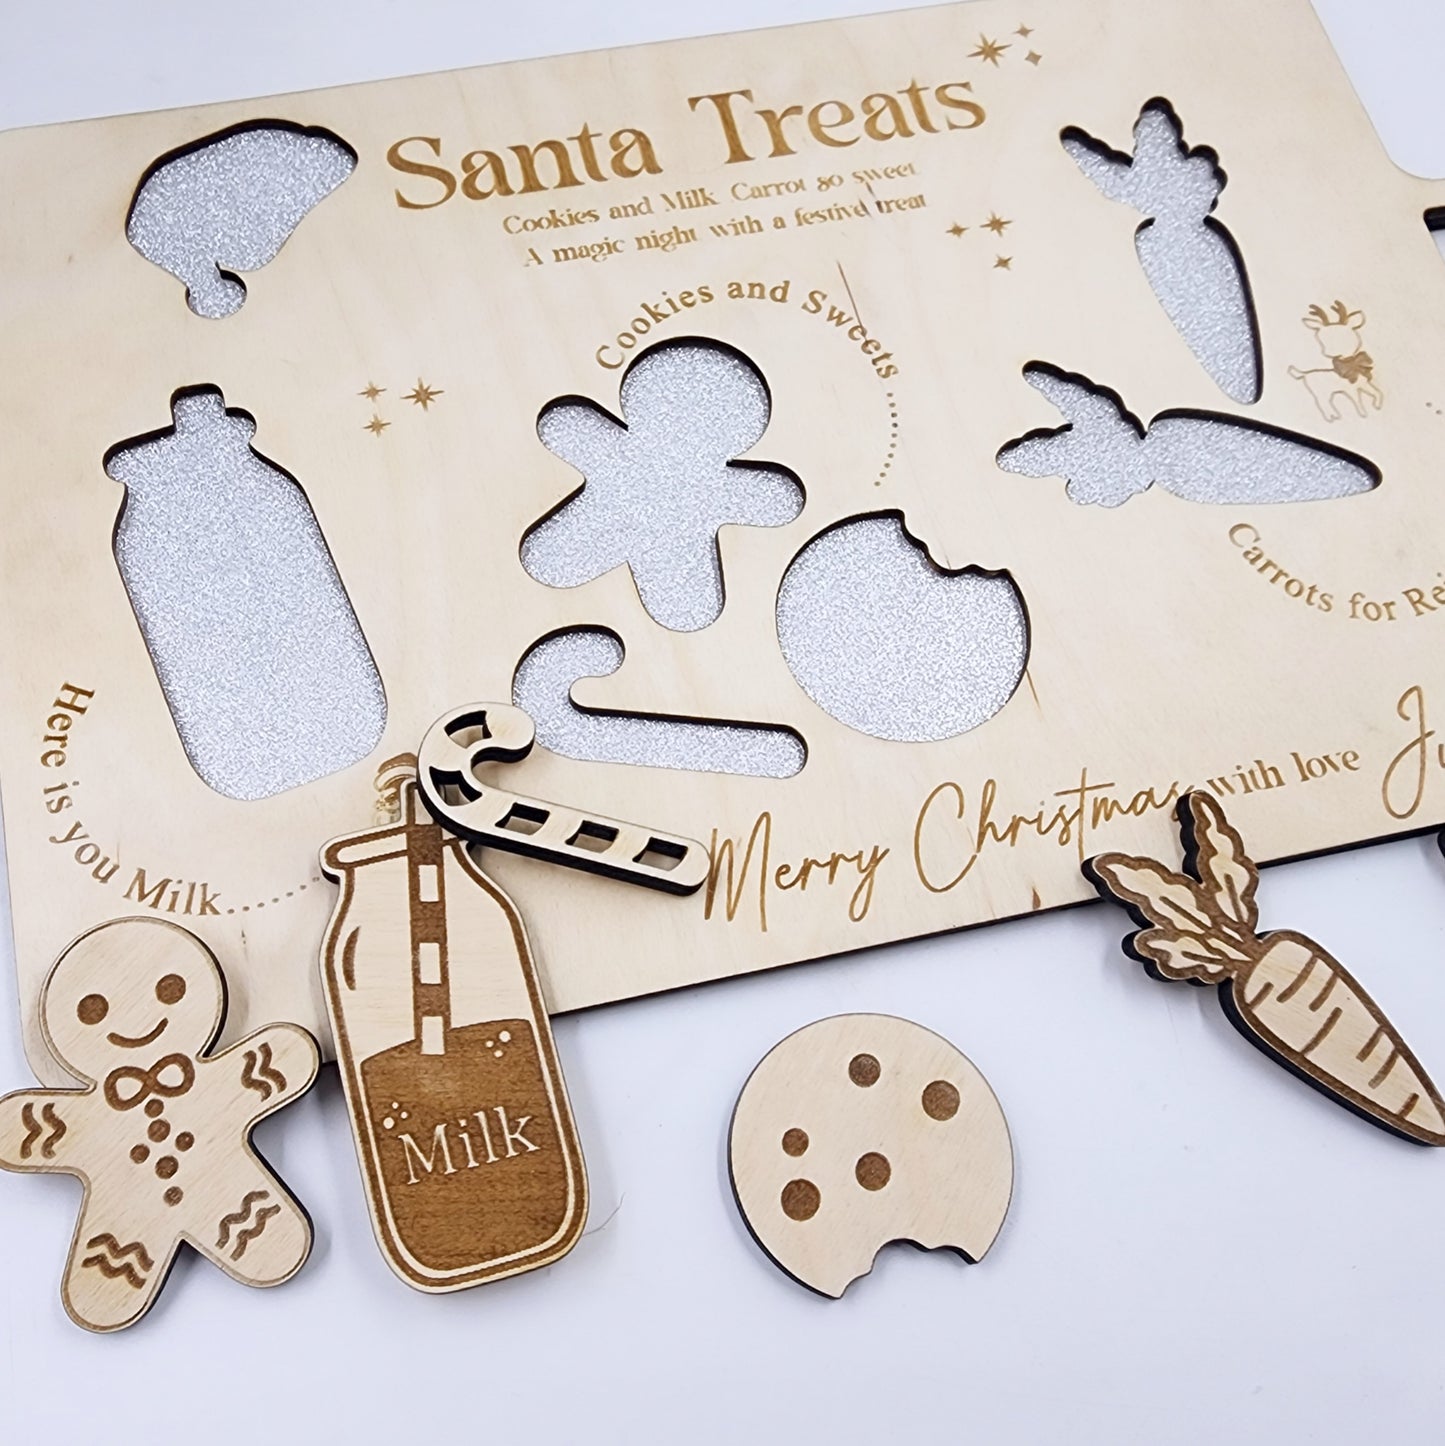 Santa treats tray puzzle